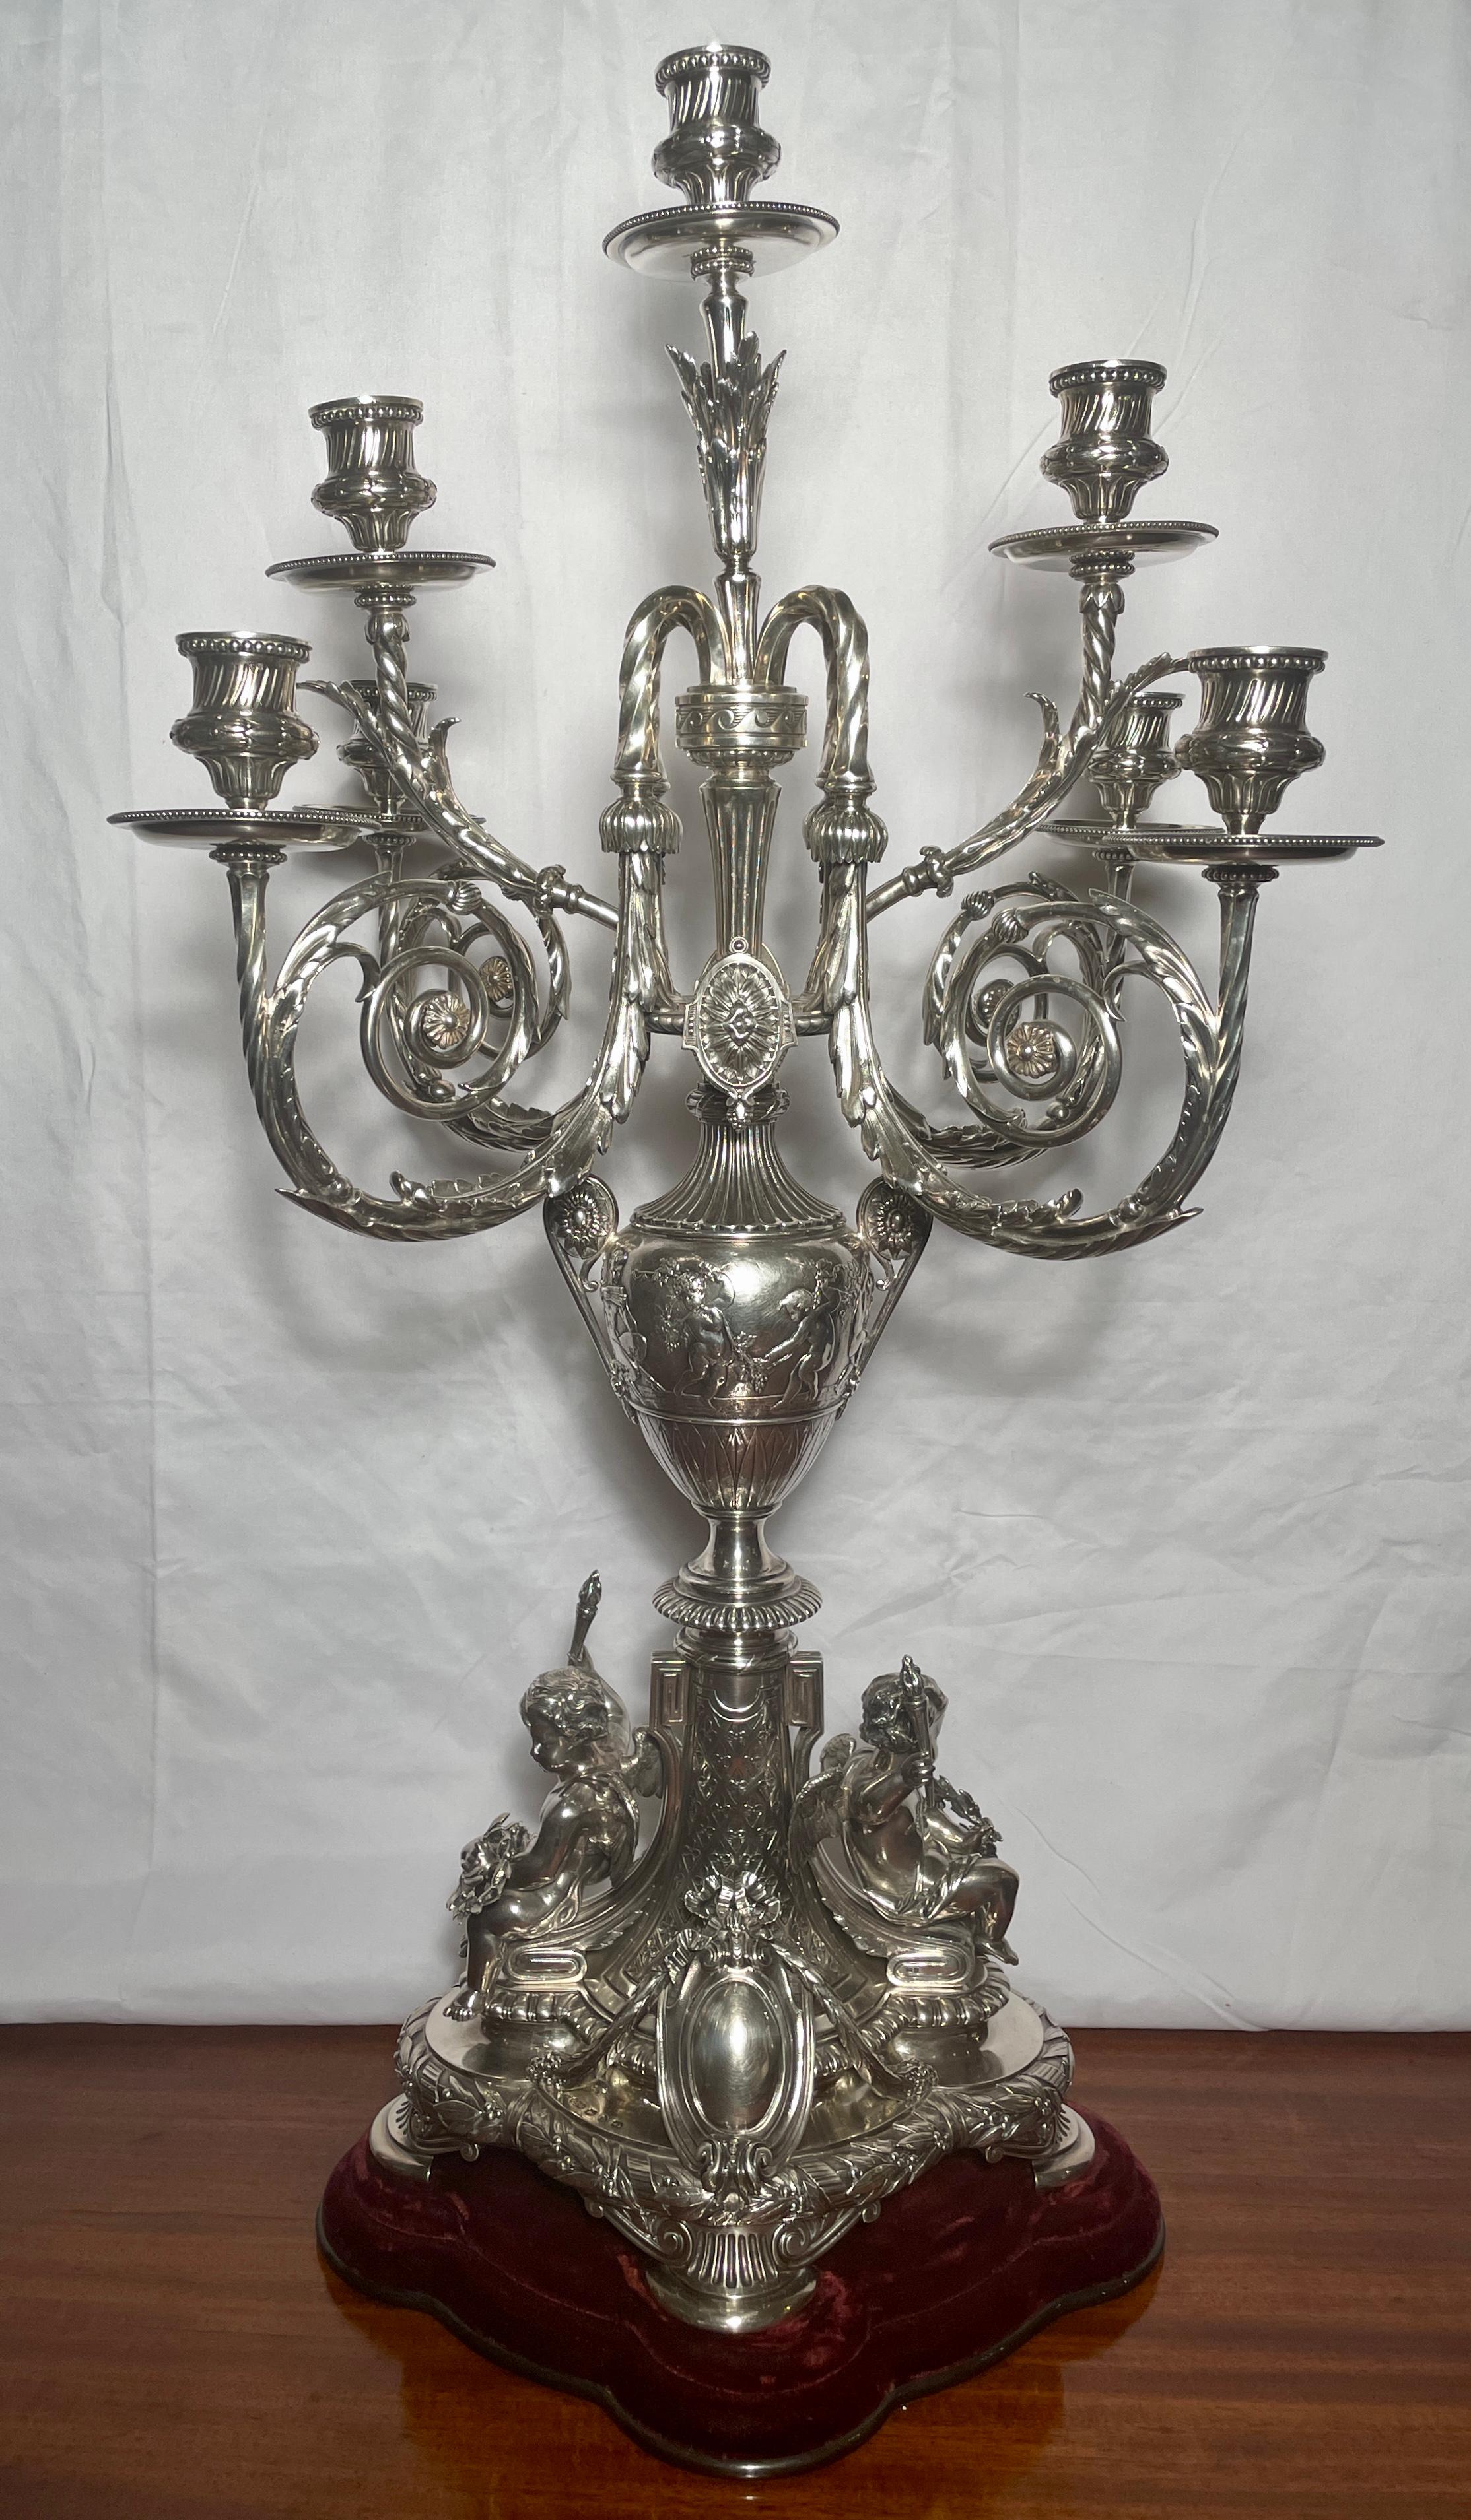 Rare paire de candélabres anciens en argent massif anglais à 8 lumières, poinçonnés Elkington, datés de 1889. 
Il s'agit d'un cadeau de mariage royal offert à Constantin Ier, duc de Sparte (et plus tard roi de Grèce) lors de son mariage royal avec